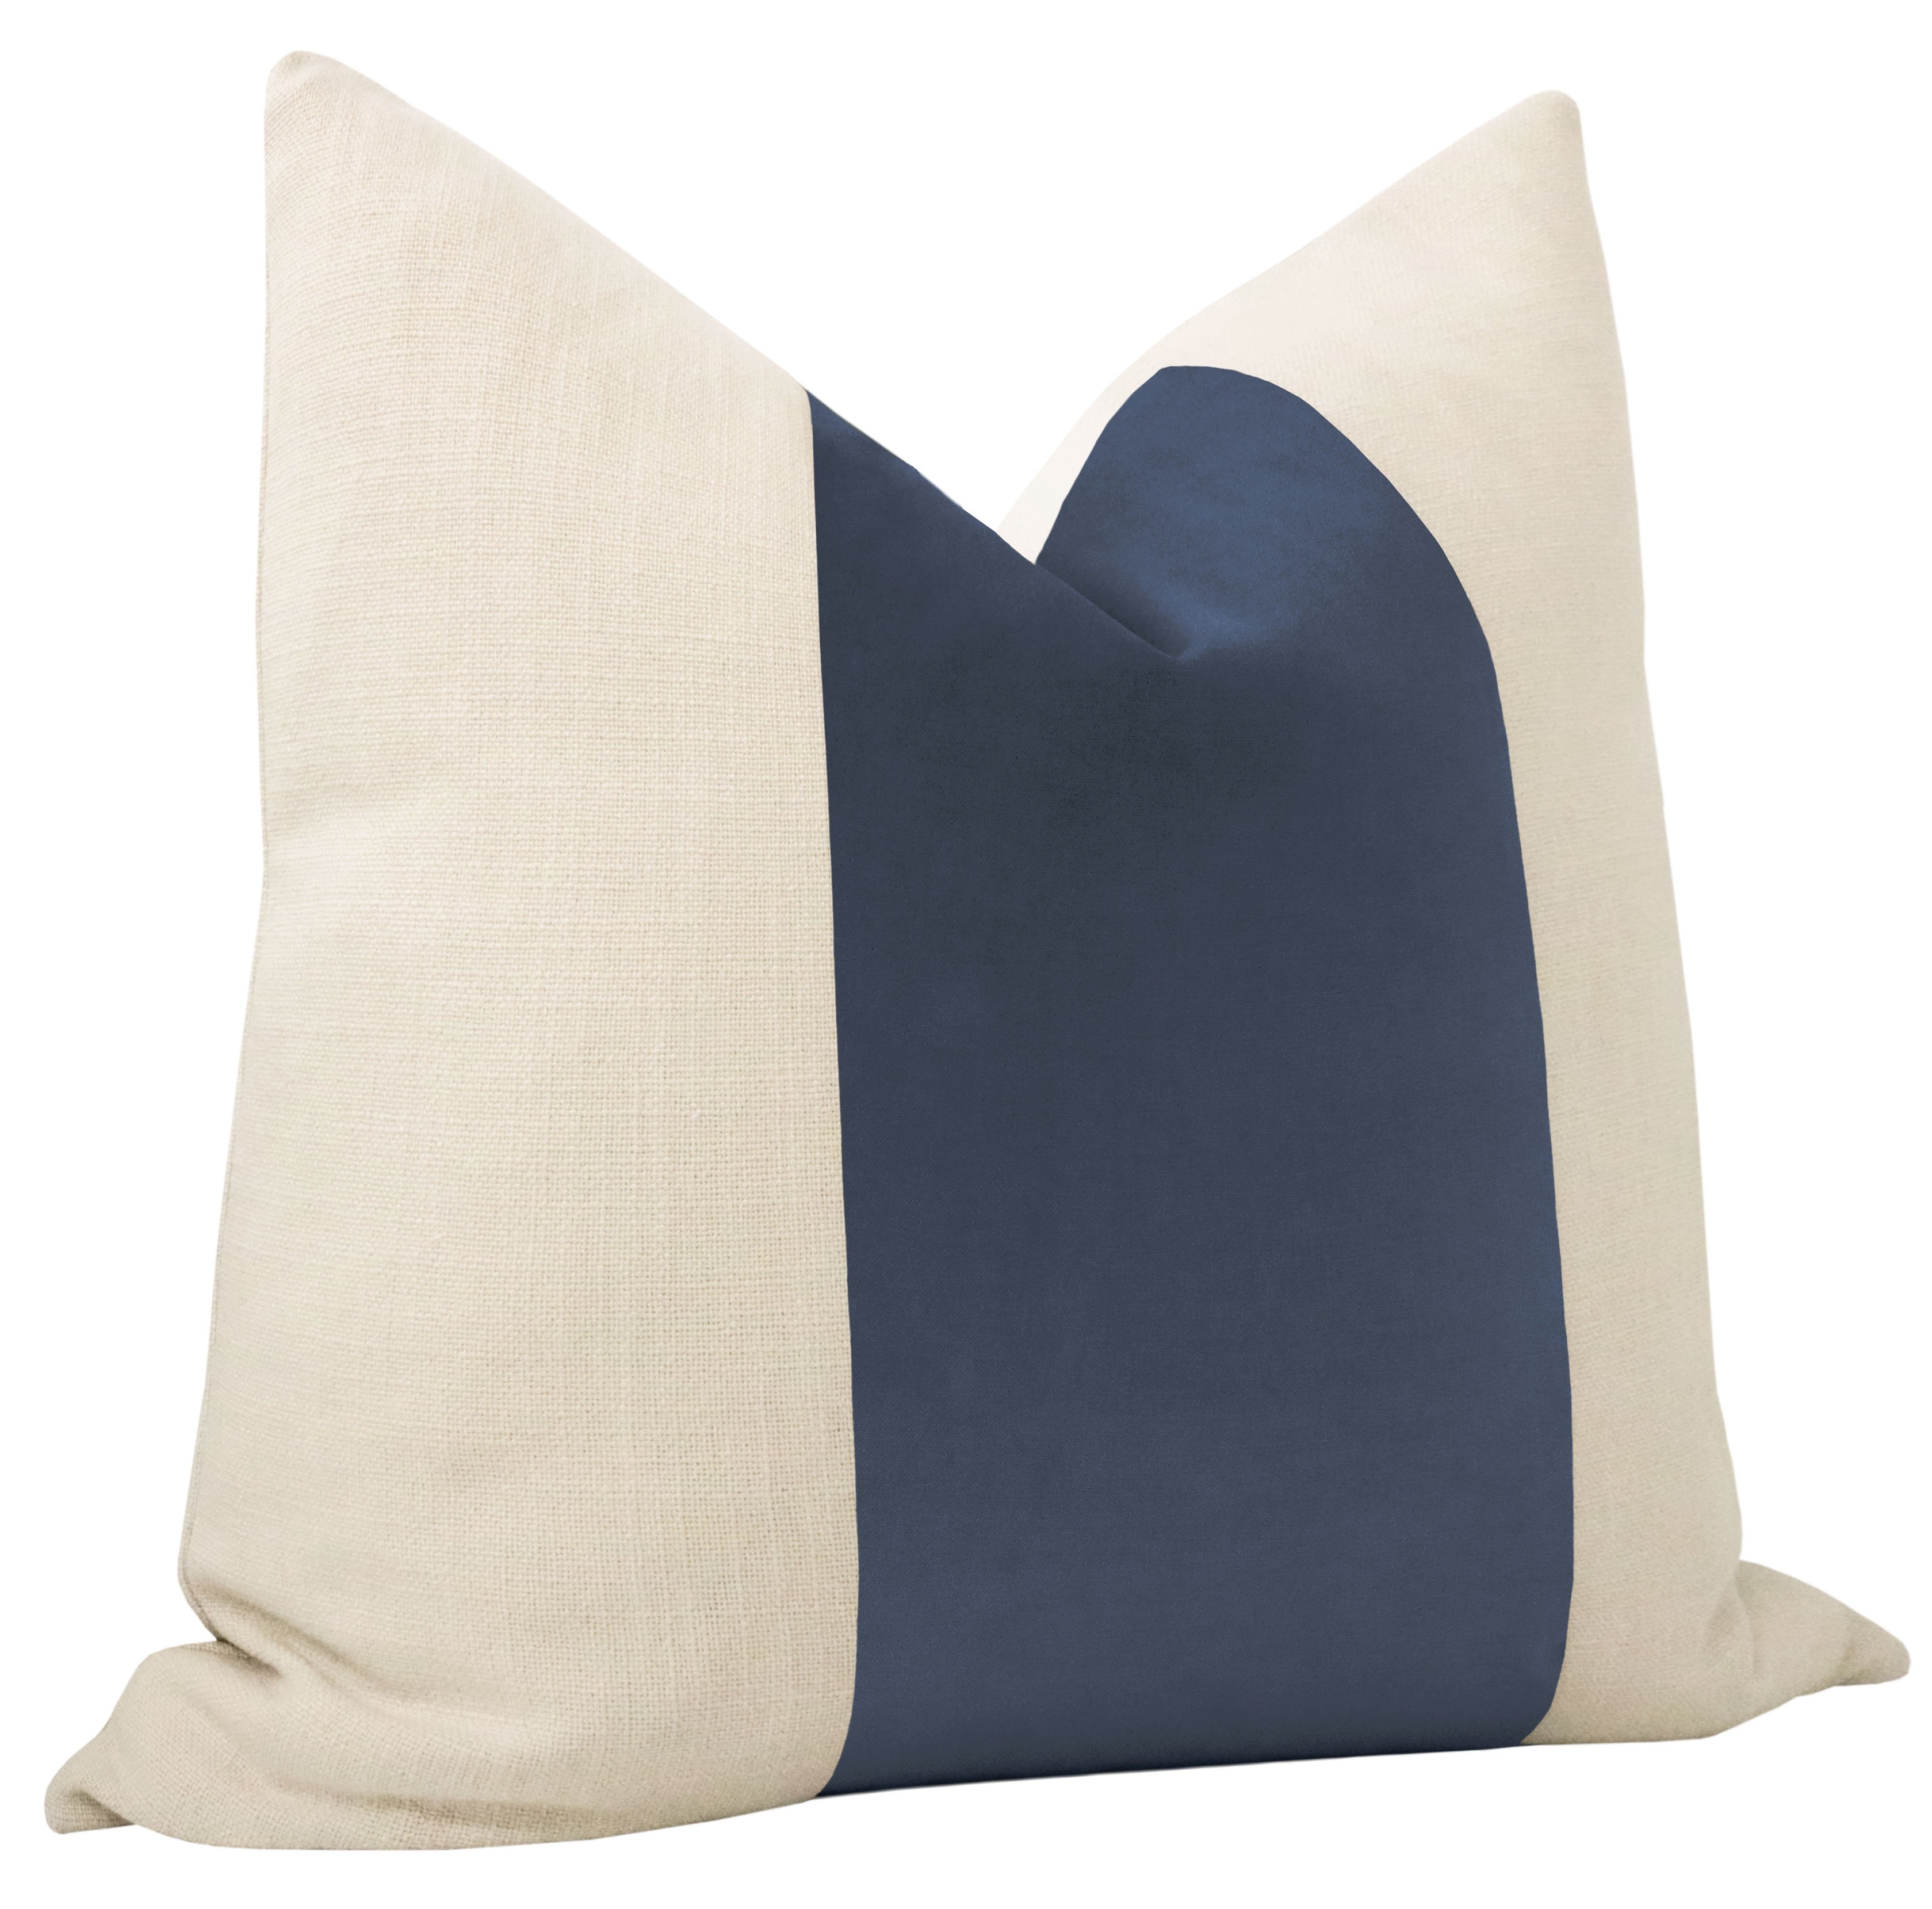 Classic Velvet Pillow Cover, Capri Blue, 20" x 20" - Image 3